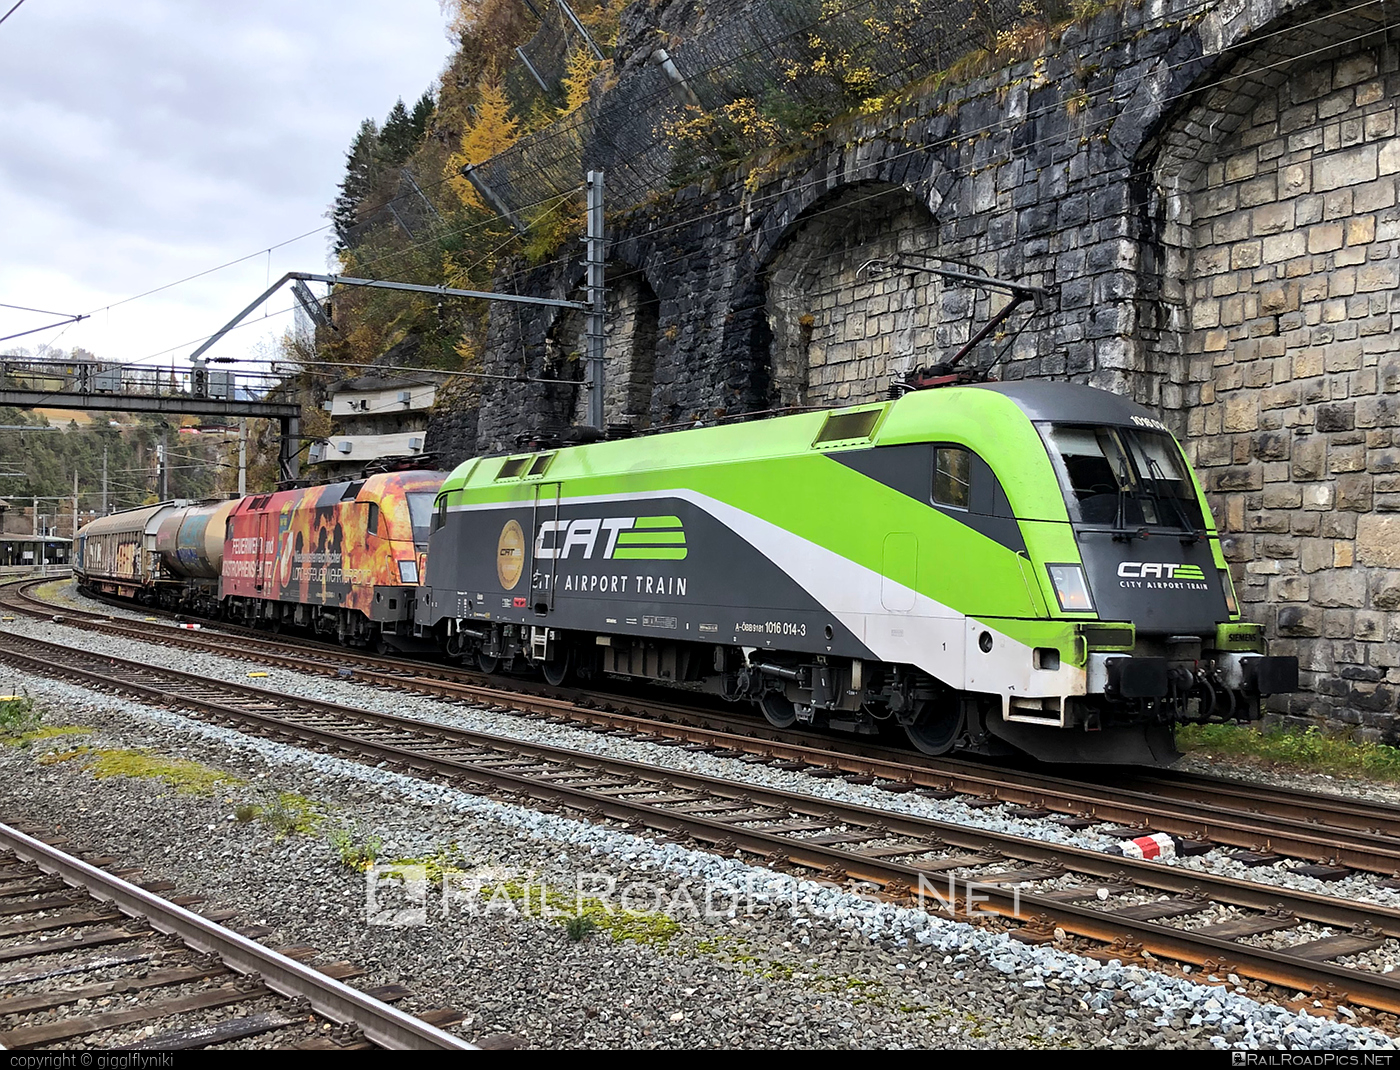 Siemens ES 64 U2 - 1016 014 operated by Rail Cargo Austria AG #cat #es64 #es64u2 #eurosprinter #mixofcargo #obb #osterreichischebundesbahnen #rcw #siemens #siemensEs64 #siemensEs64u2 #siemenstaurus #taurus #tauruslocomotive